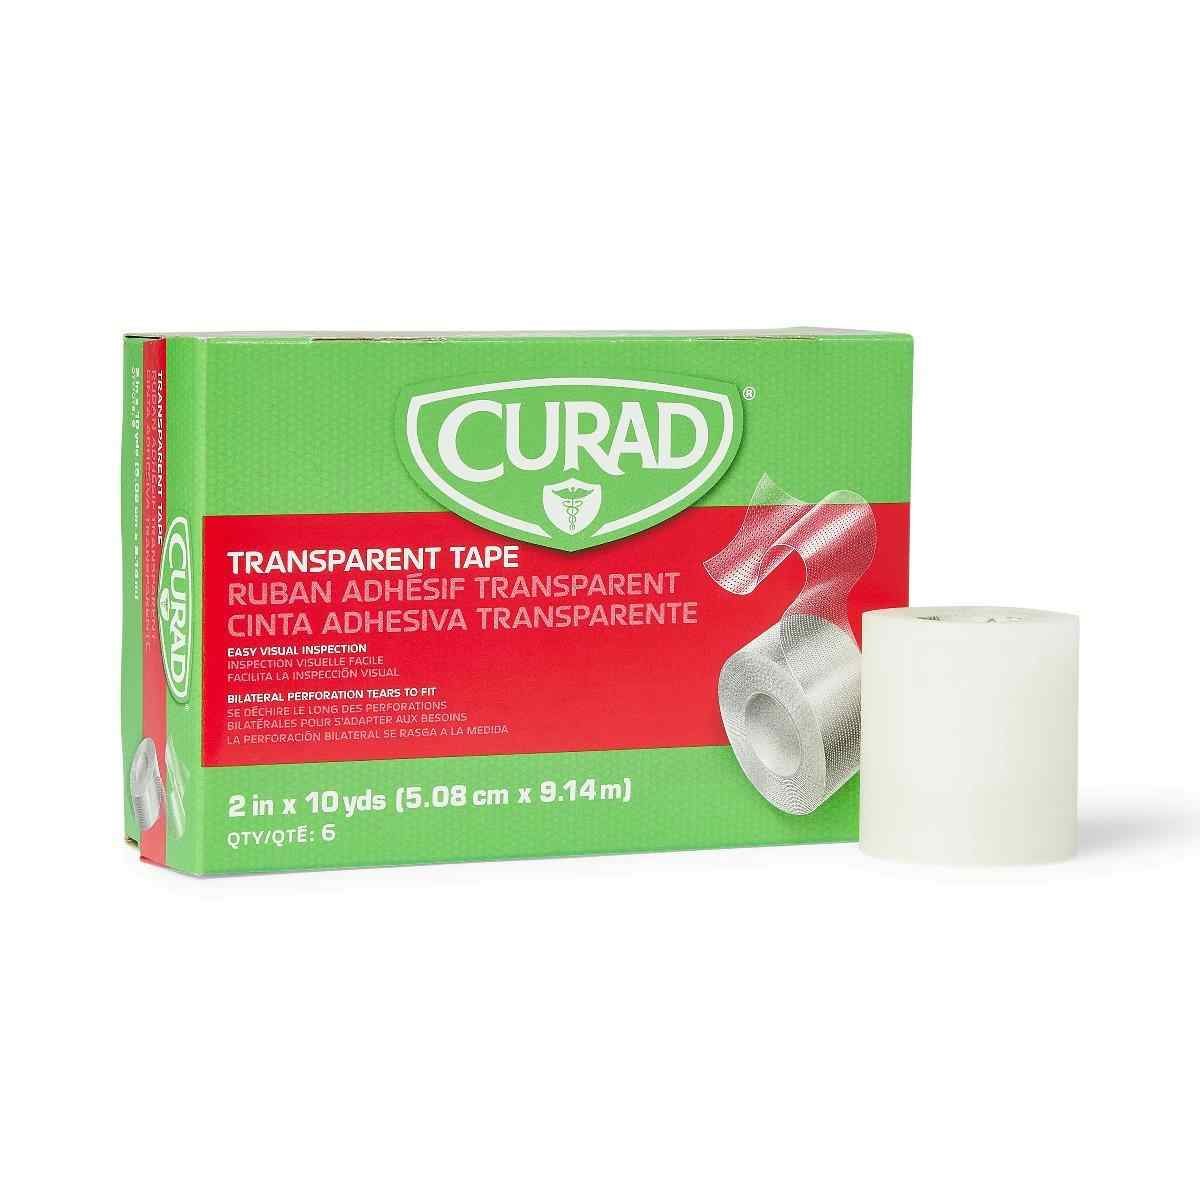 CURAD Transparent Adhesive Tape